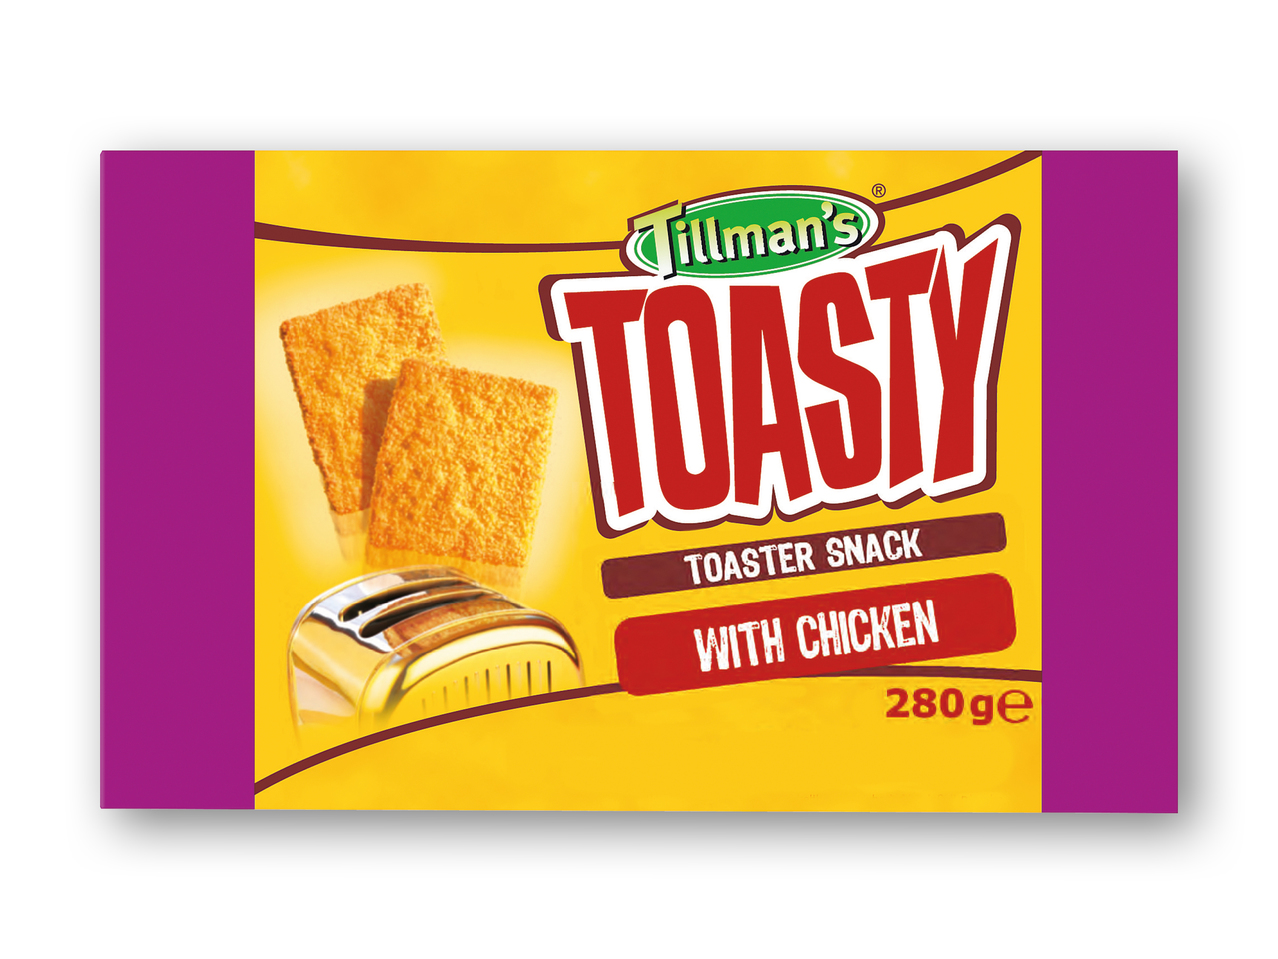 TILLMAN'S Toasty snack